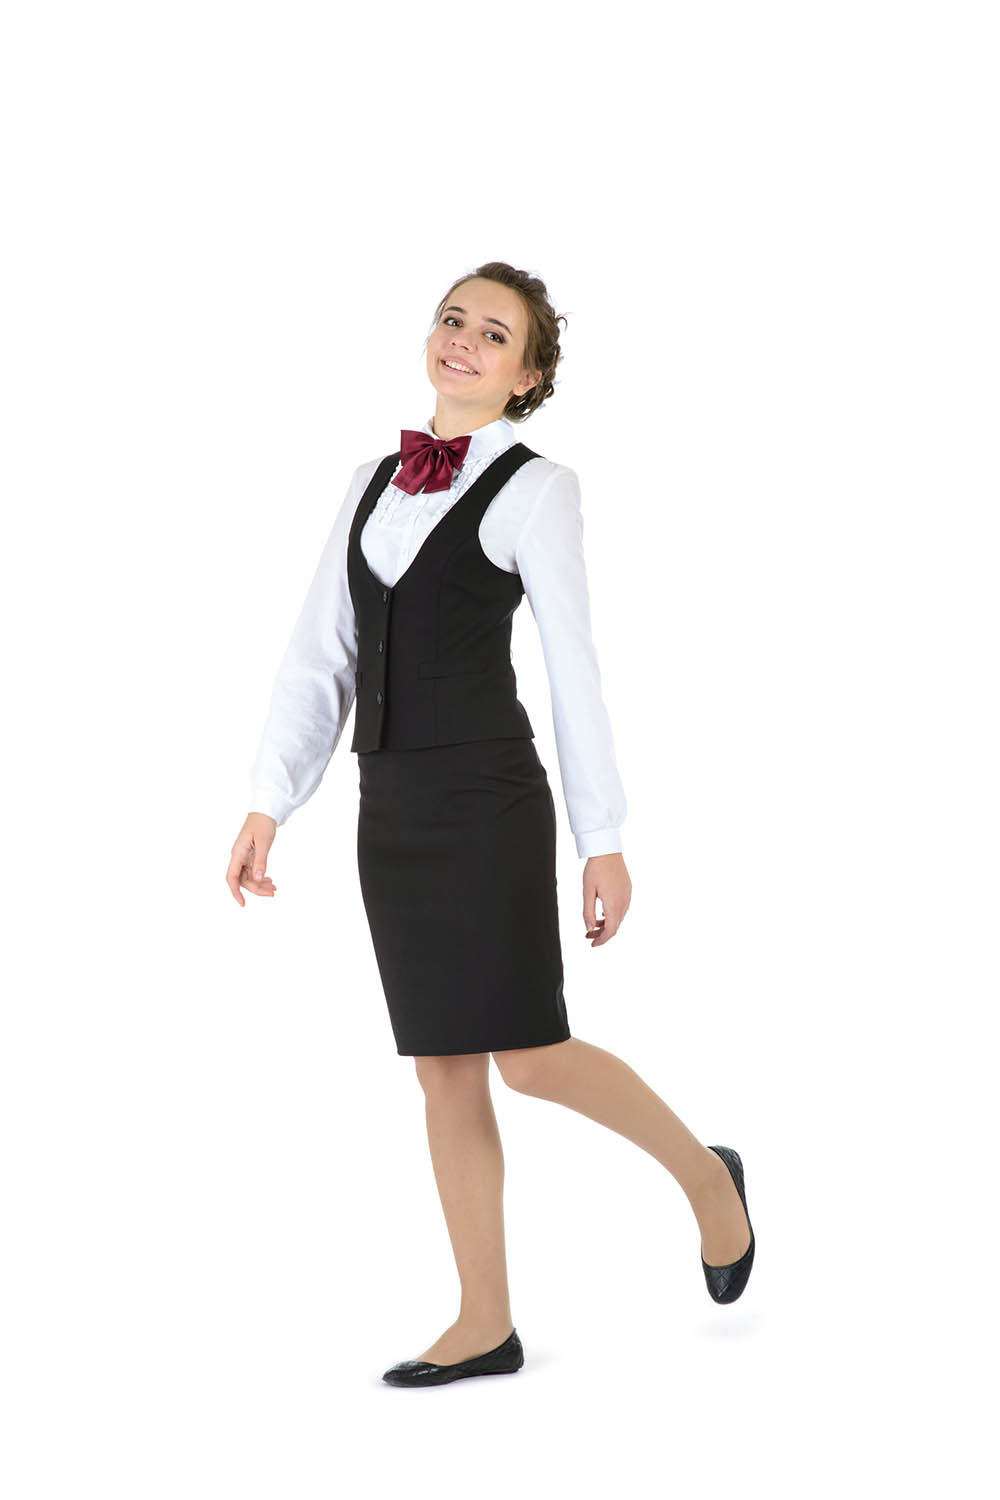 Образ настоящей деловой леди — базовая юбка-карандаш с классической посадкой и приталенный жилет — придется по вкусу старшекласснице. Жилет <price>1550 руб.</price>, юбка <price>1500 руб.</price> (9–11-й классы).